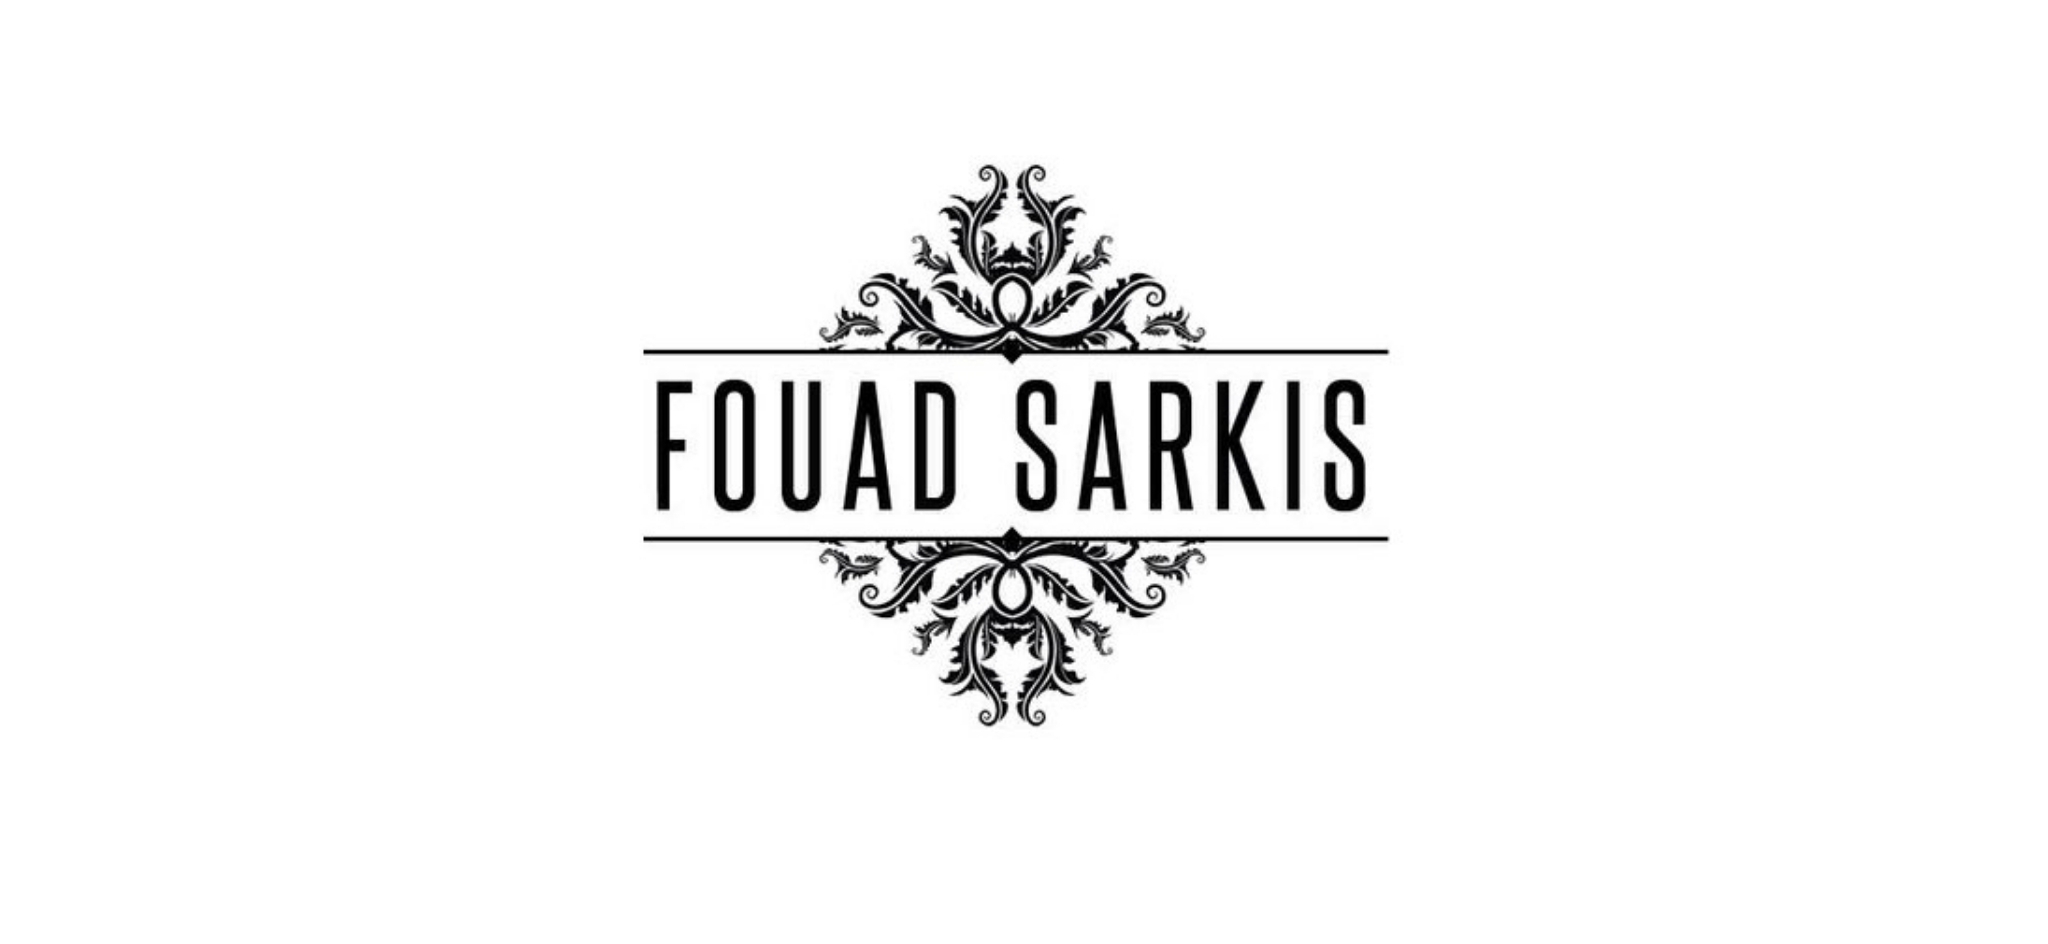 Fouad Sarkis